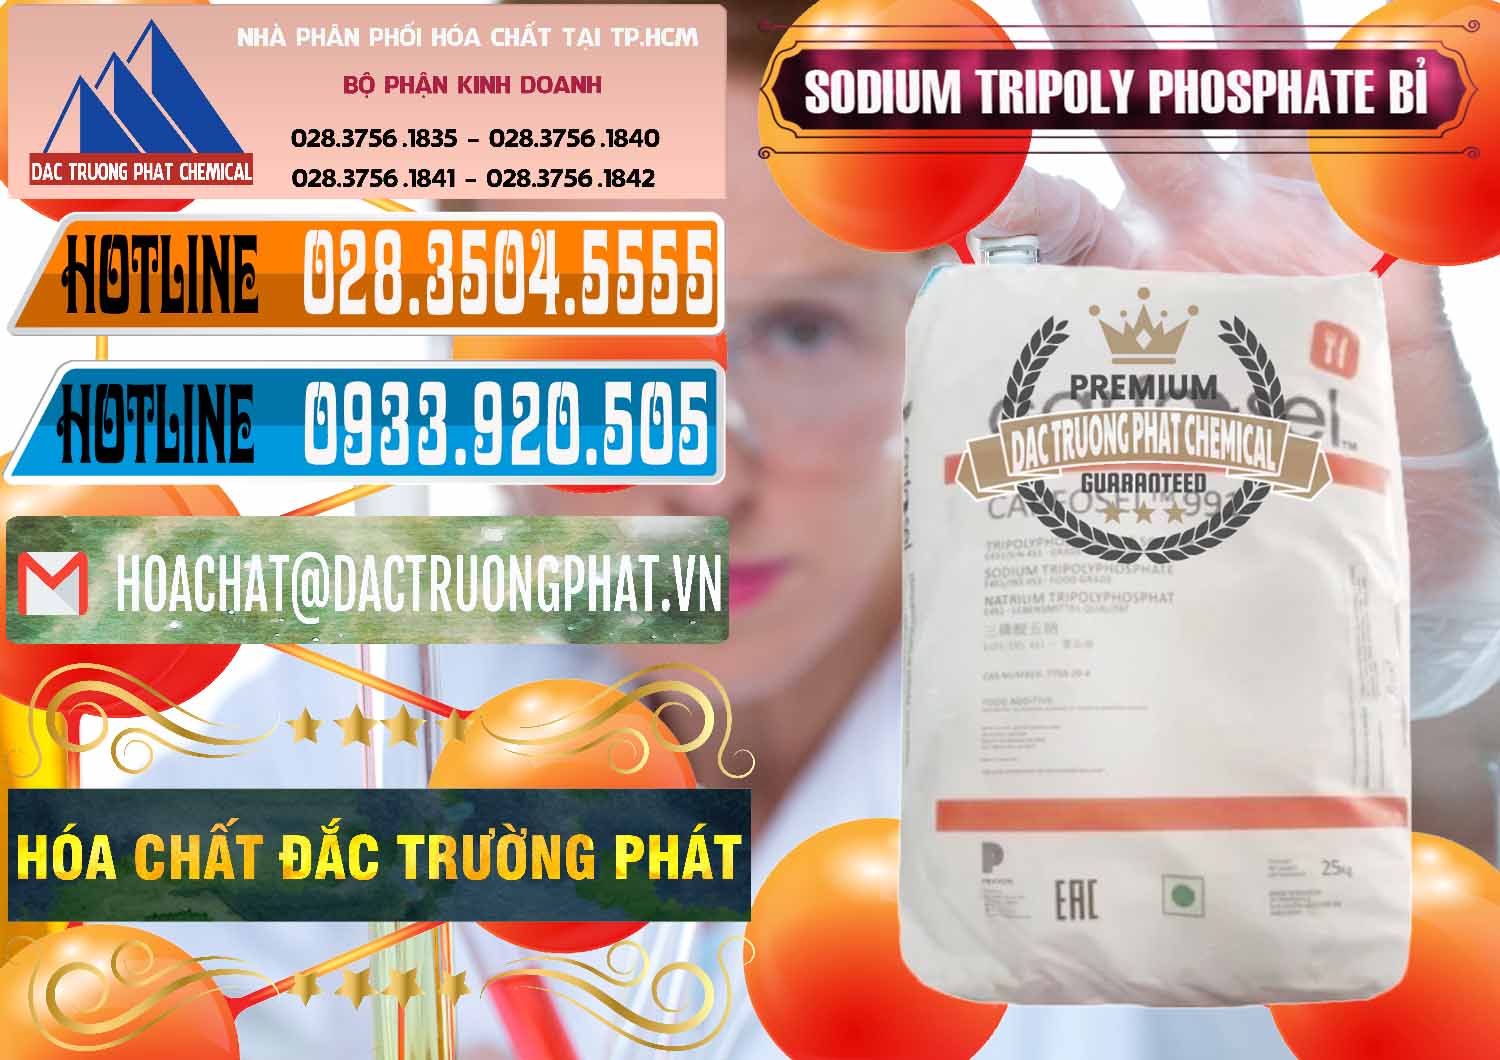 Đơn vị chuyên bán & phân phối Sodium Tripoly Phosphate - STPP Carfosel 991 Bỉ Belgium - 0429 - Cty chuyên kinh doanh _ cung cấp hóa chất tại TP.HCM - stmp.net